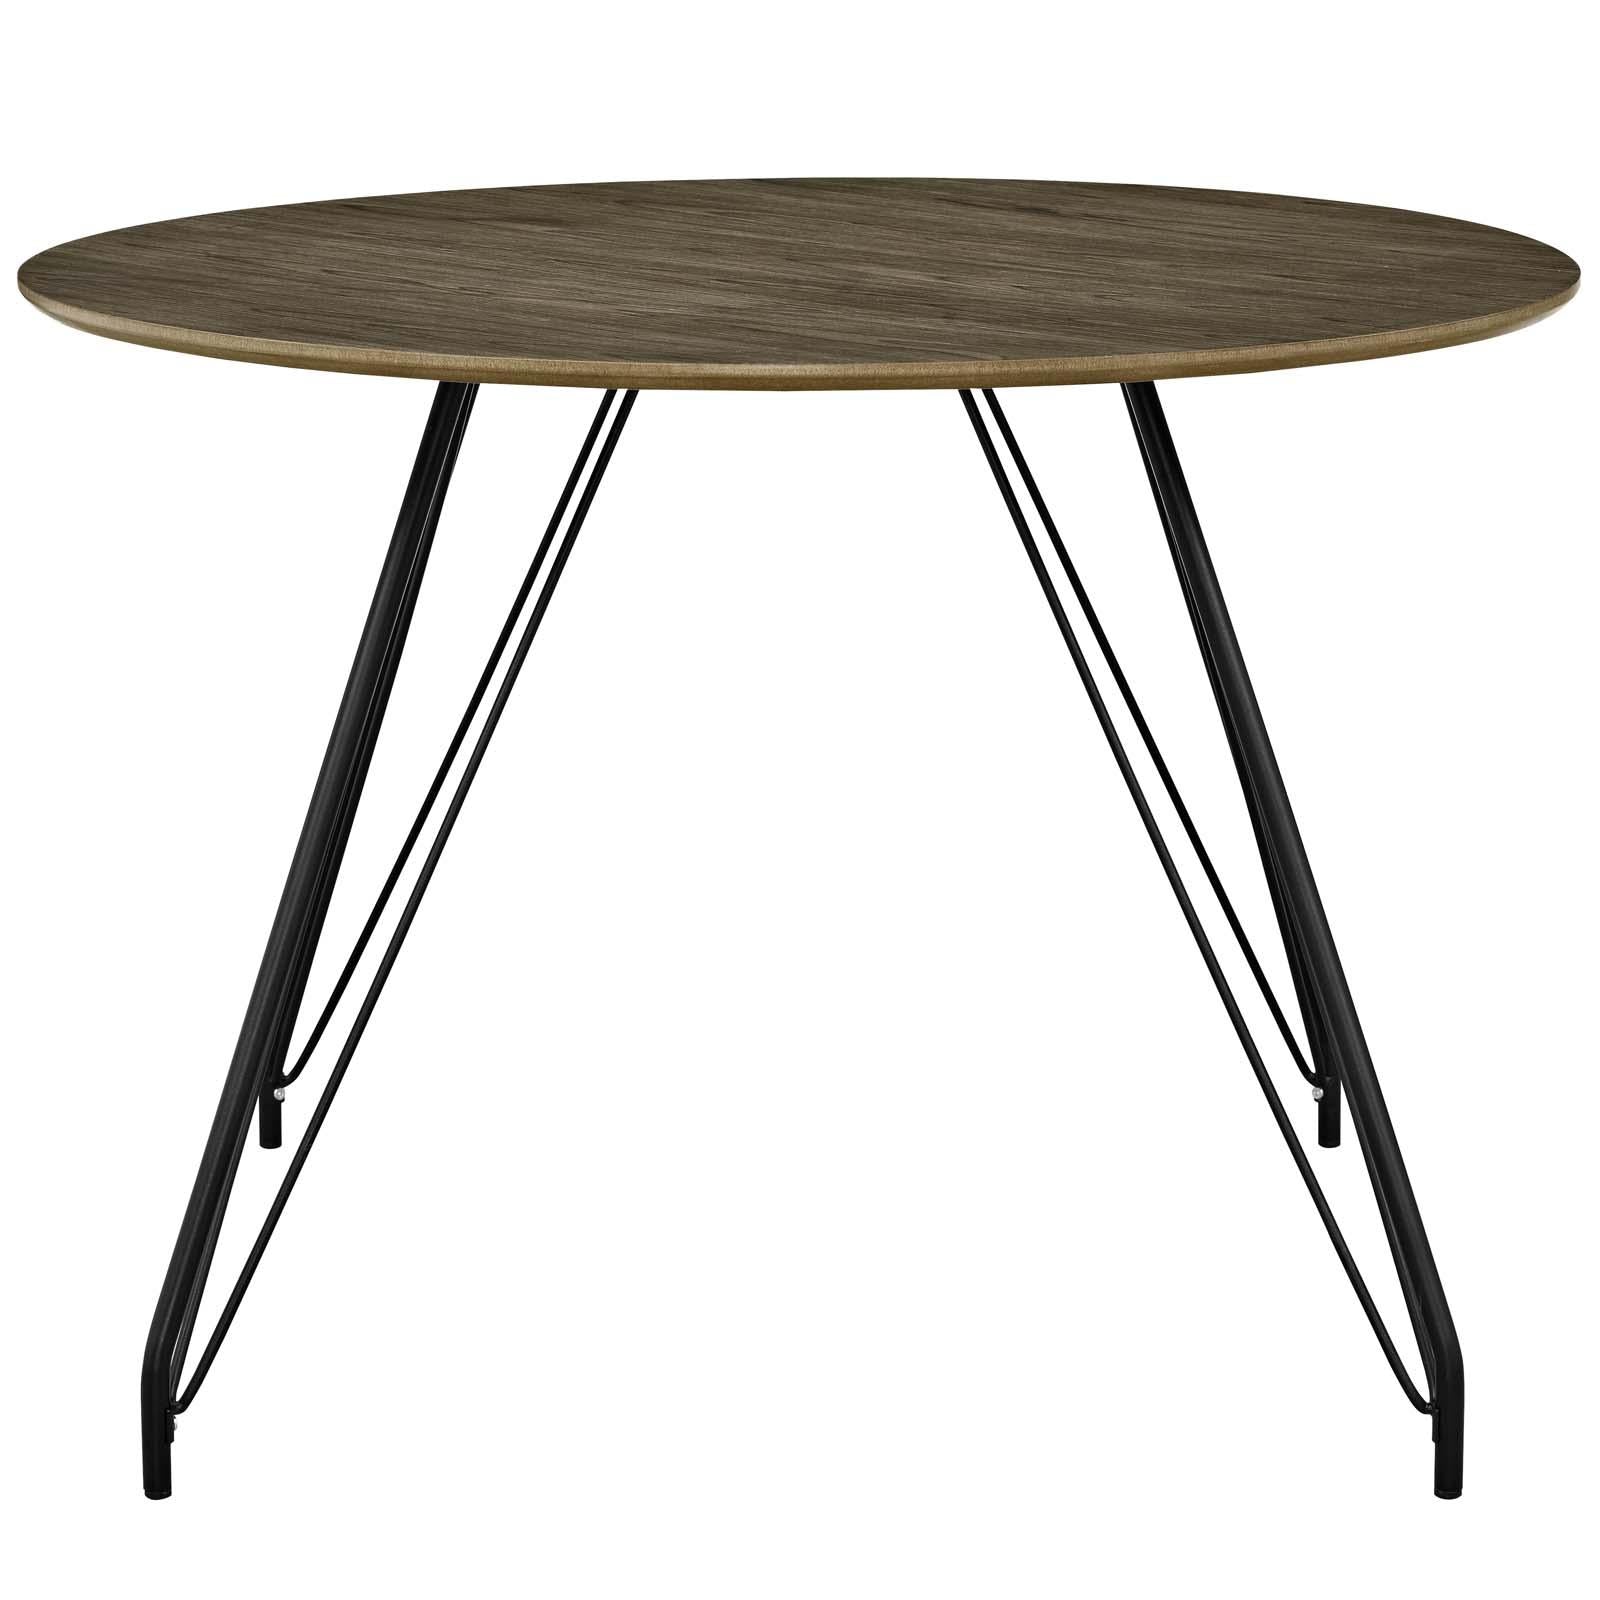 Modway Furniture Modern Satellite Circular Dining Table - EEI-2670